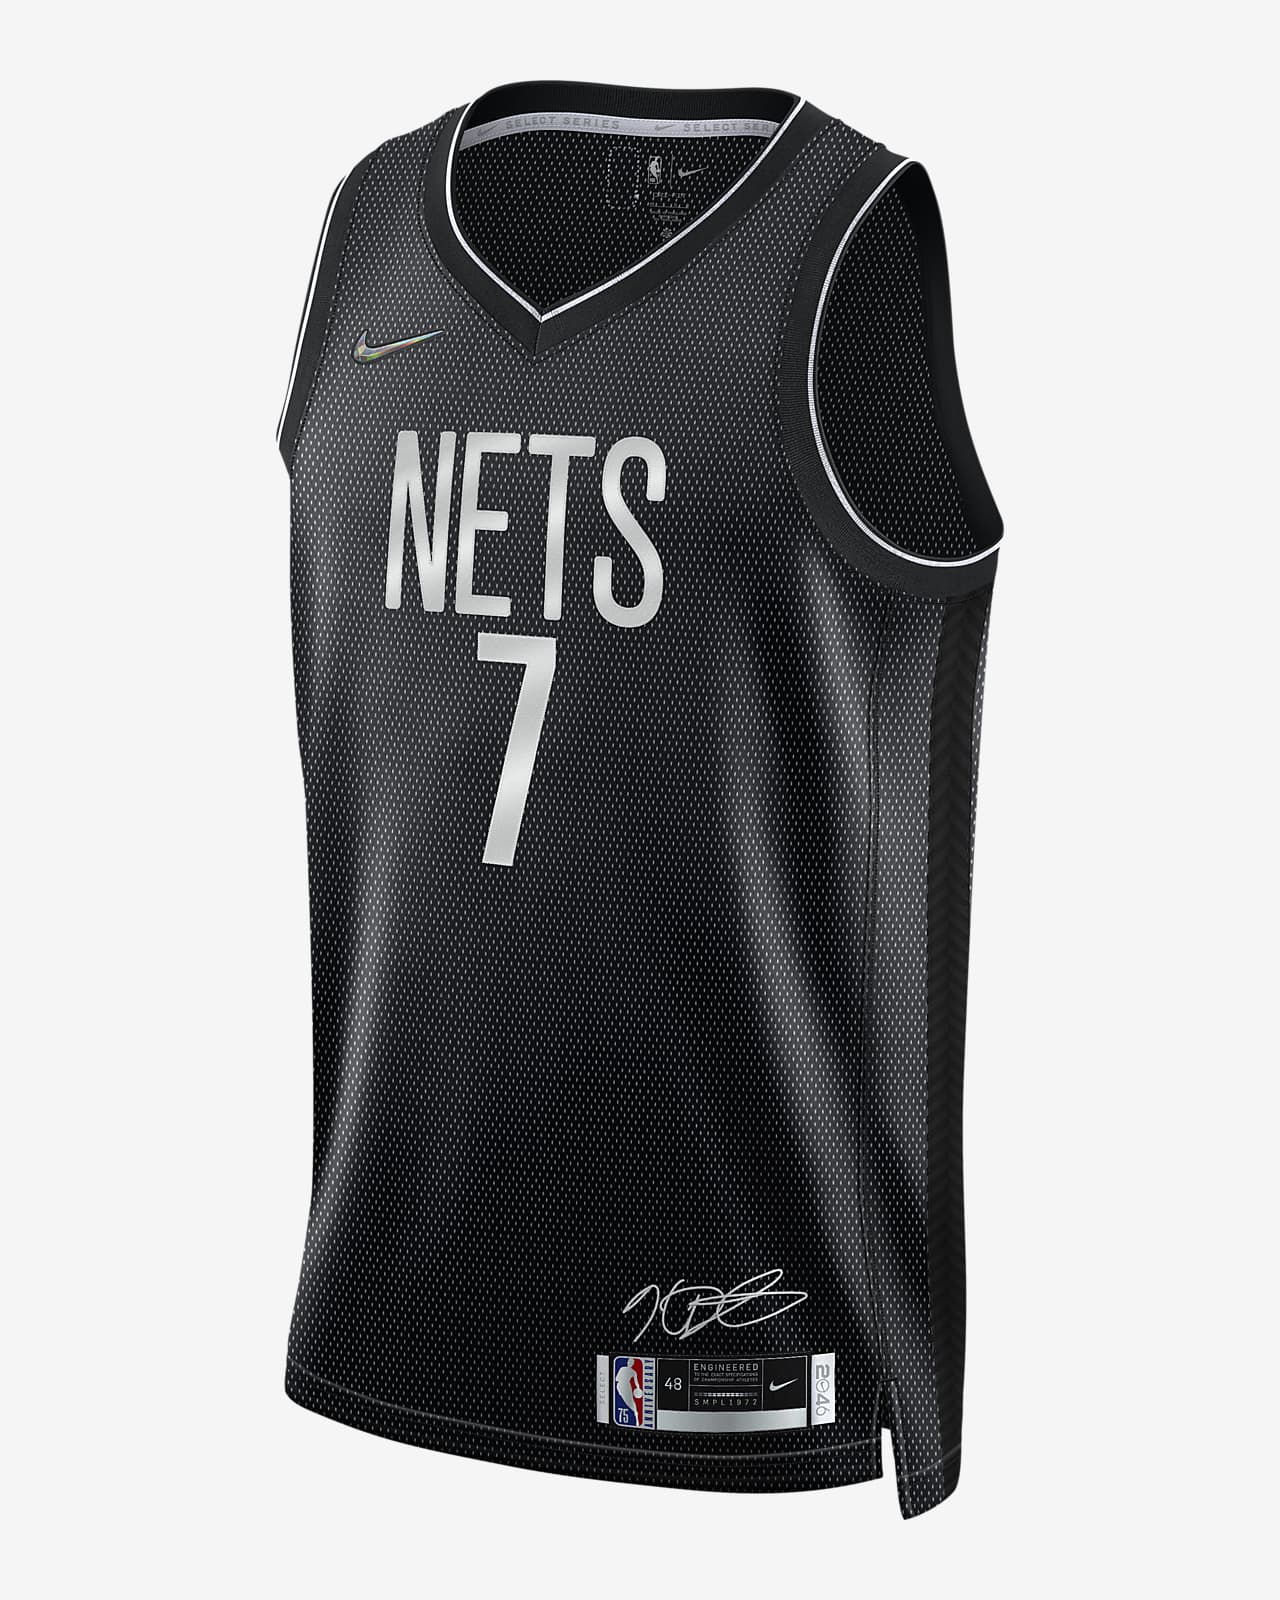 Kevin Durant Nets Camiseta Nike Dri-FIT NBA - Hombre. Nike